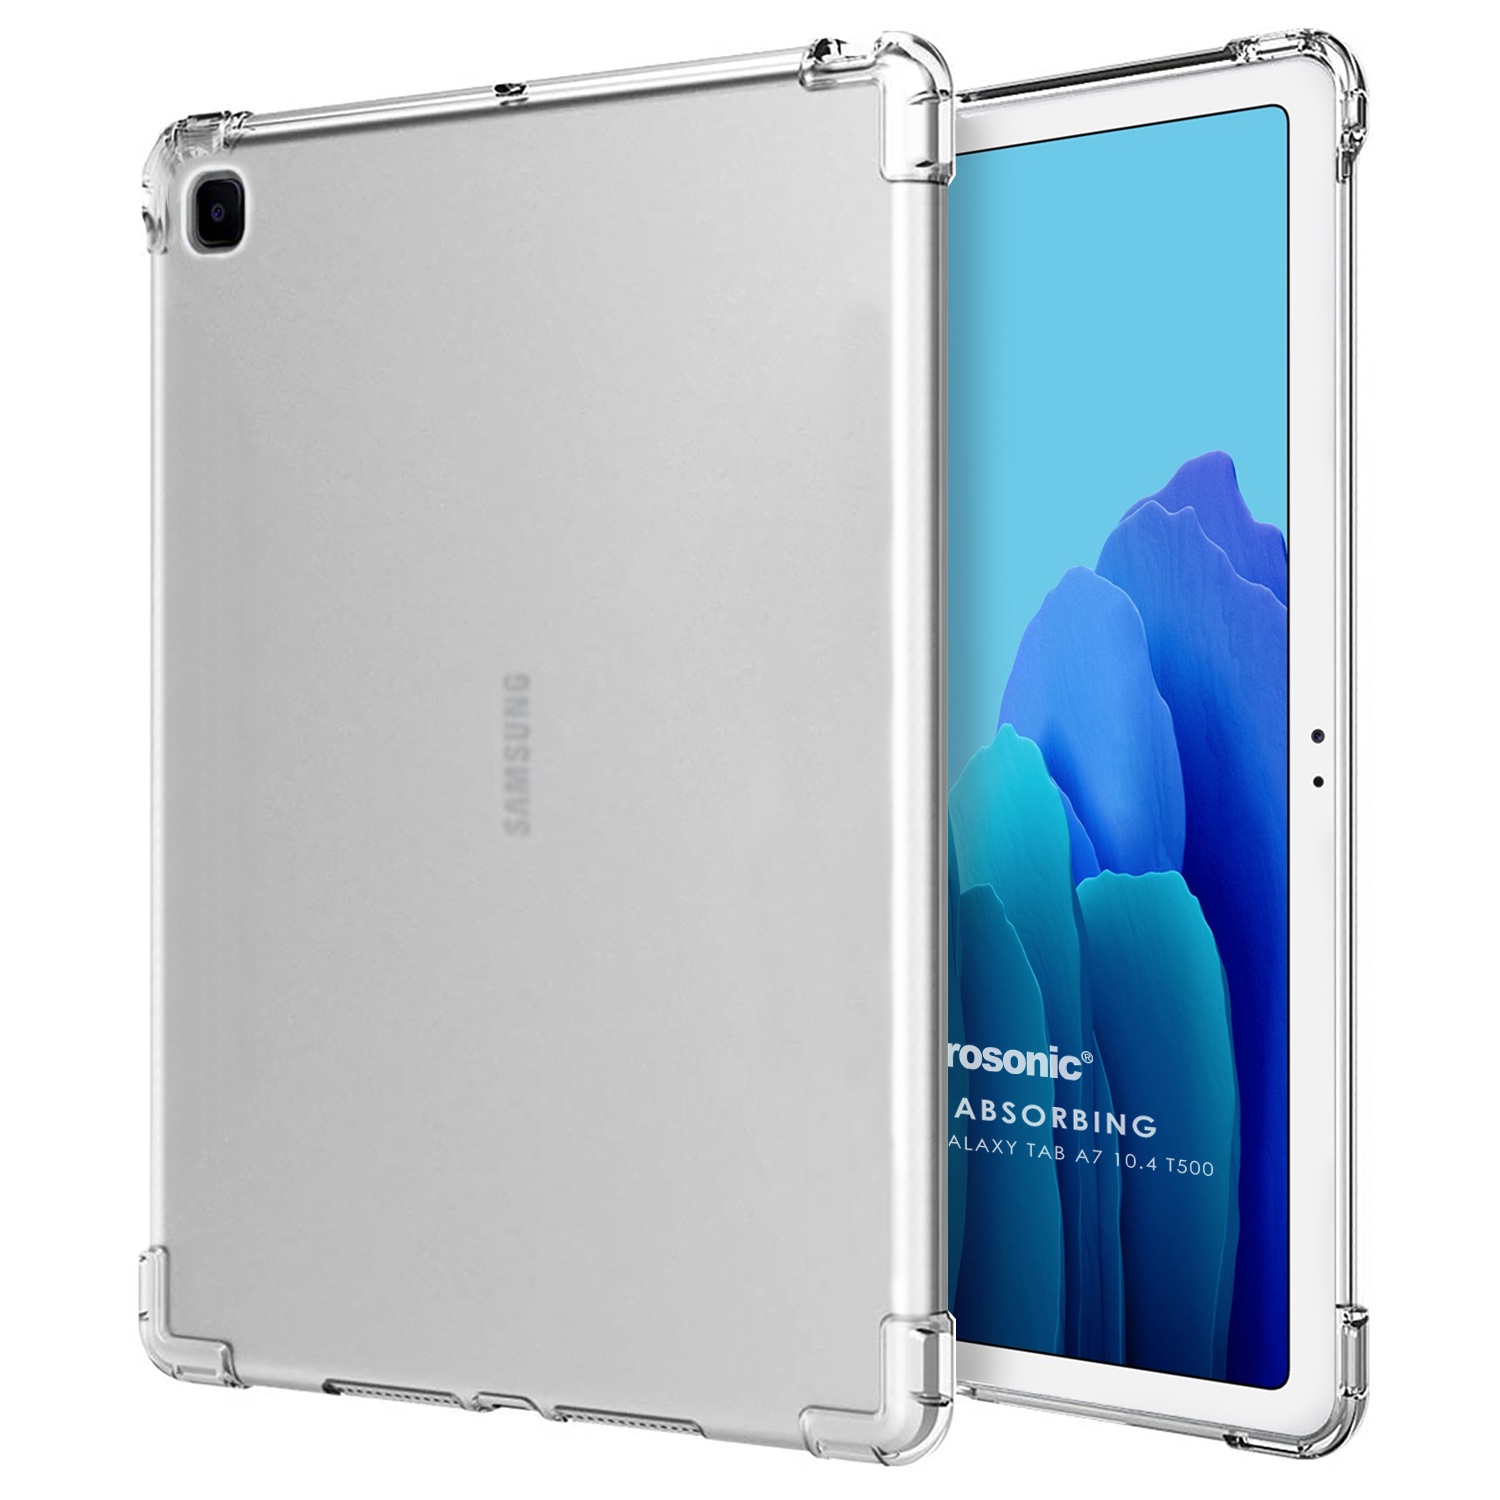 Microsonic Samsung Galaxy Tab A7 10 4 T500 Kılıf Shock Absorbing Şeffaf